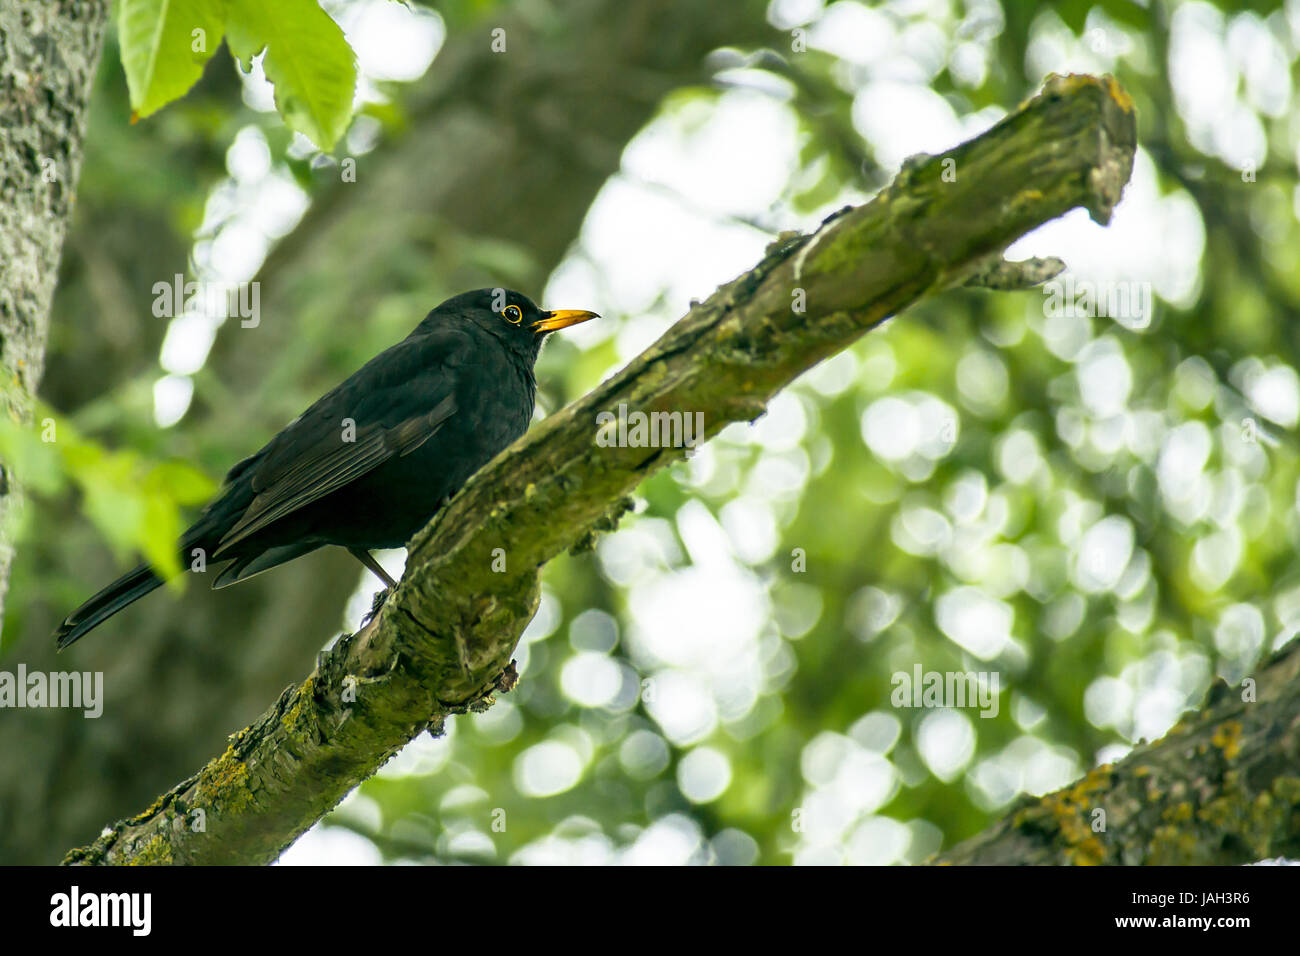 Close-up of a blackbird dans un arbre Banque D'Images